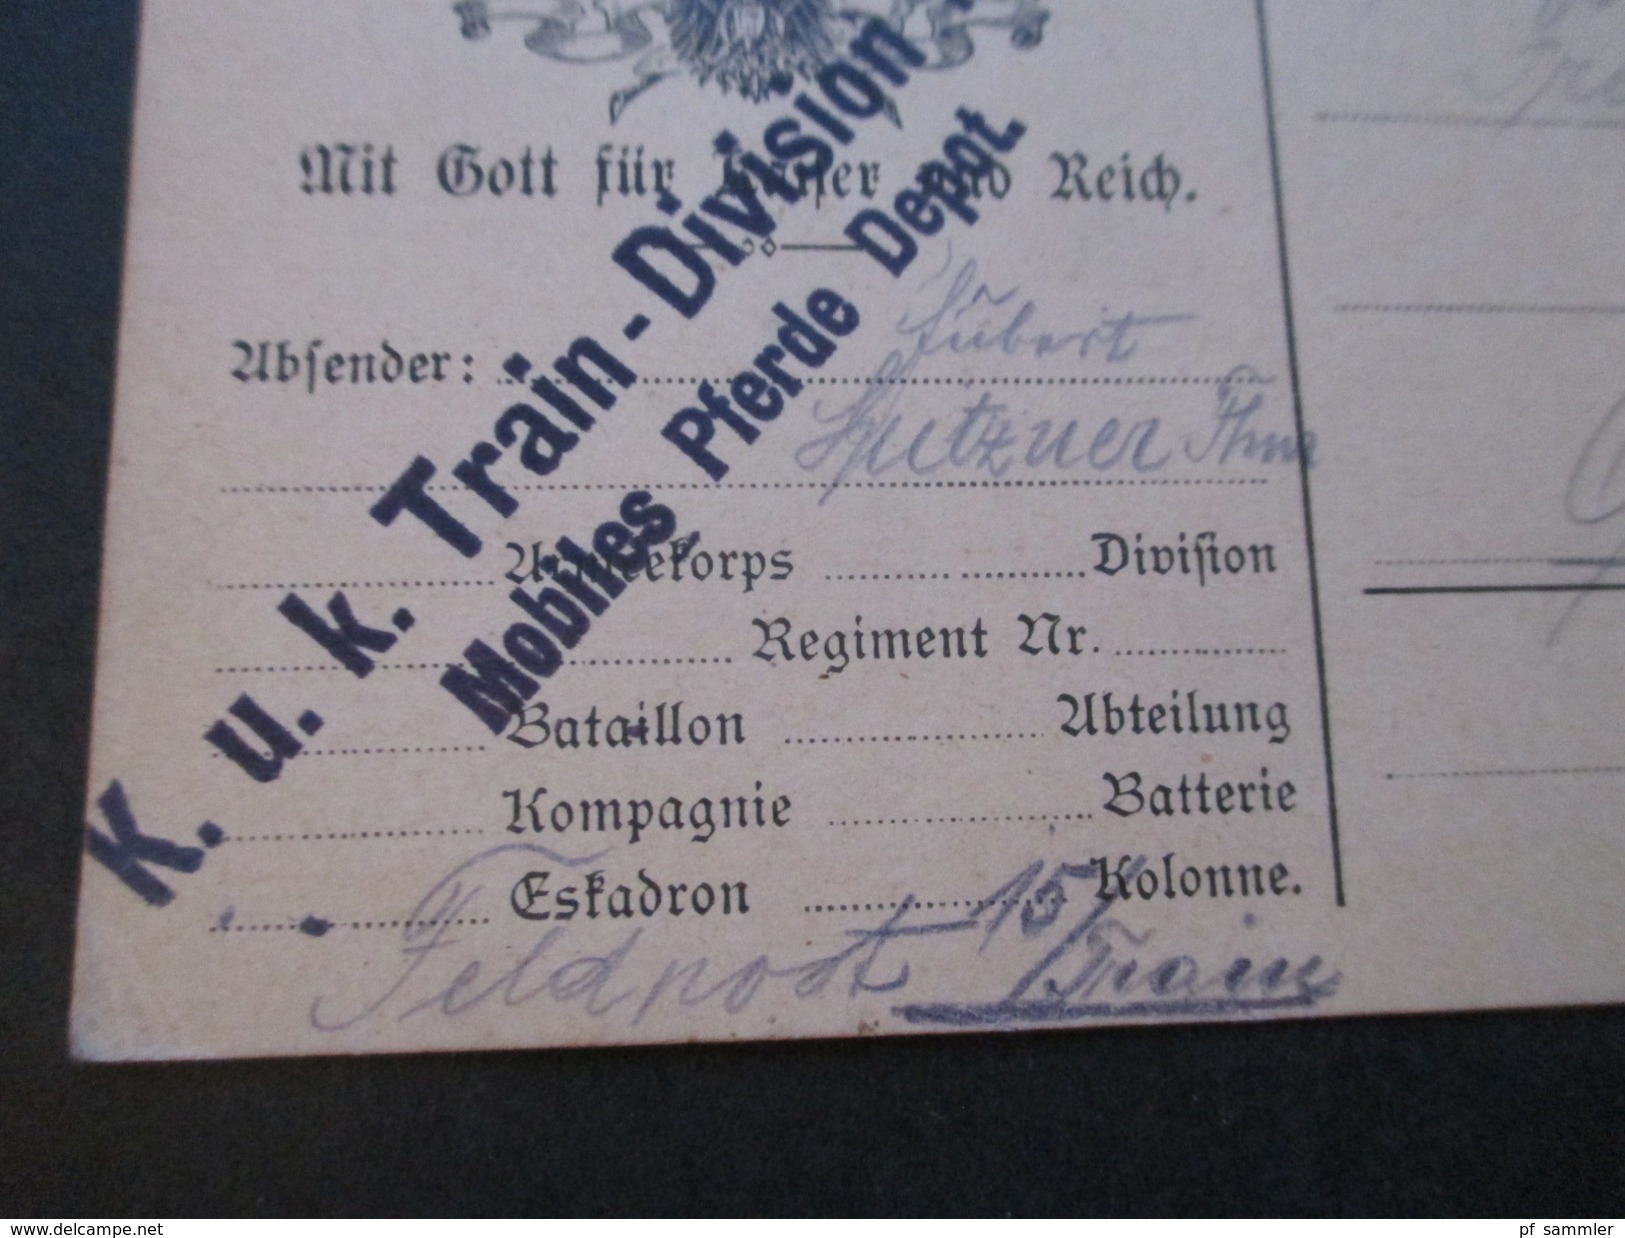 Österreich 1914 Feldpostkarte Mit Gott Für Kaiser Und Reich. K.u.K. Train Division Nr. 2 Mobiles Pferde Depot - Covers & Documents